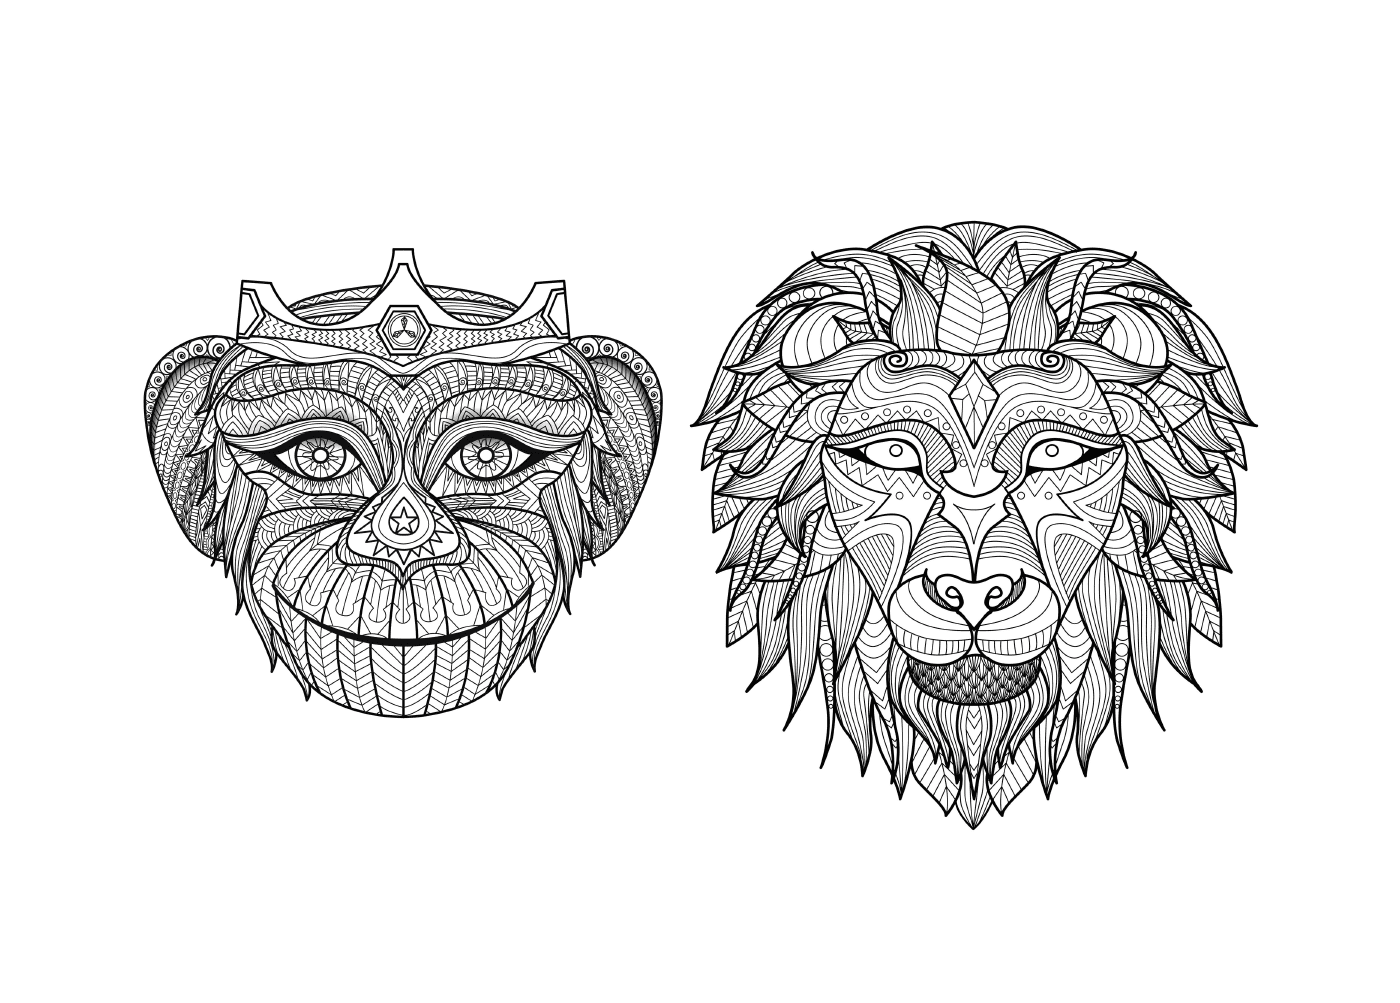   Deux dessins en noir et blanc d'un lion et d'un singe 